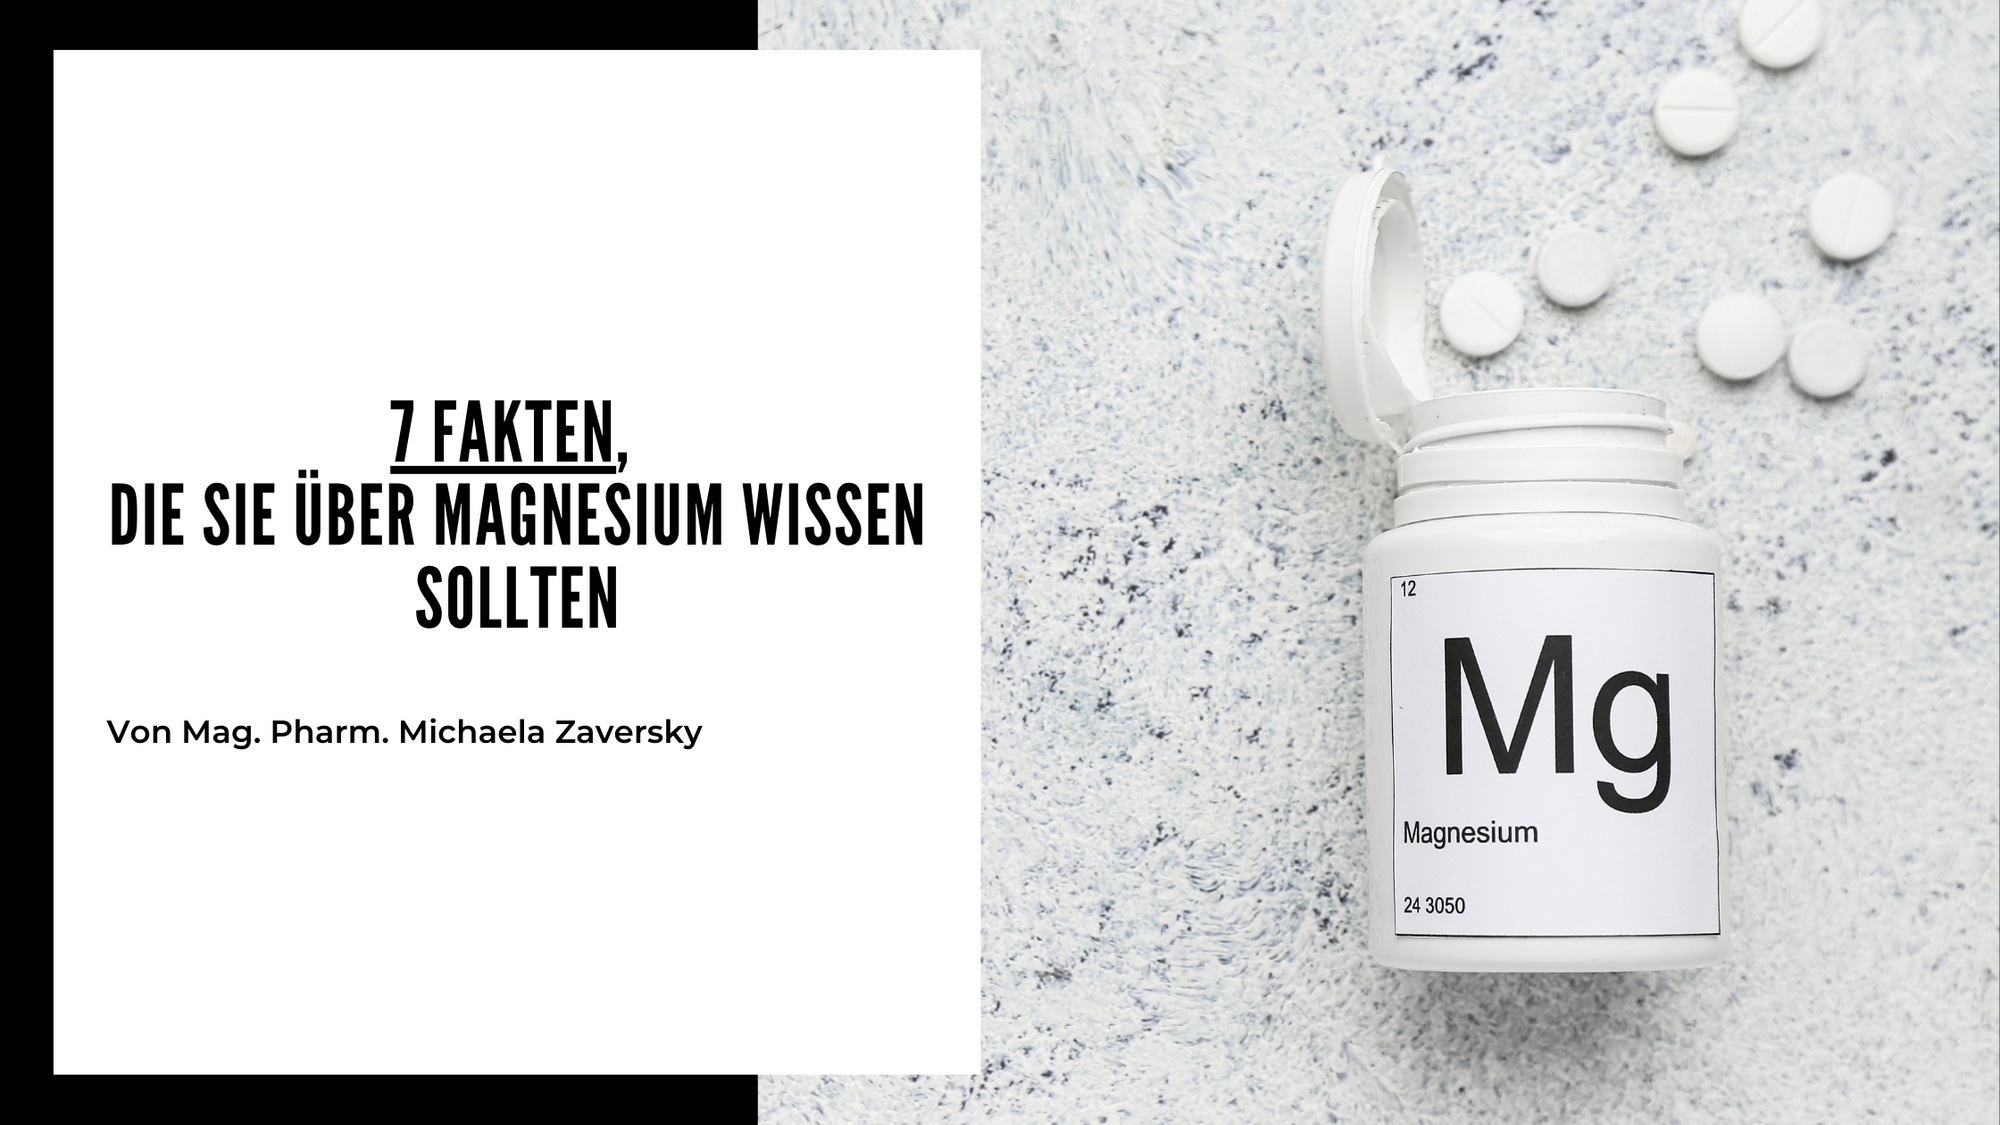 7 Fakten, sie Sie über Magnesium wissen sollten